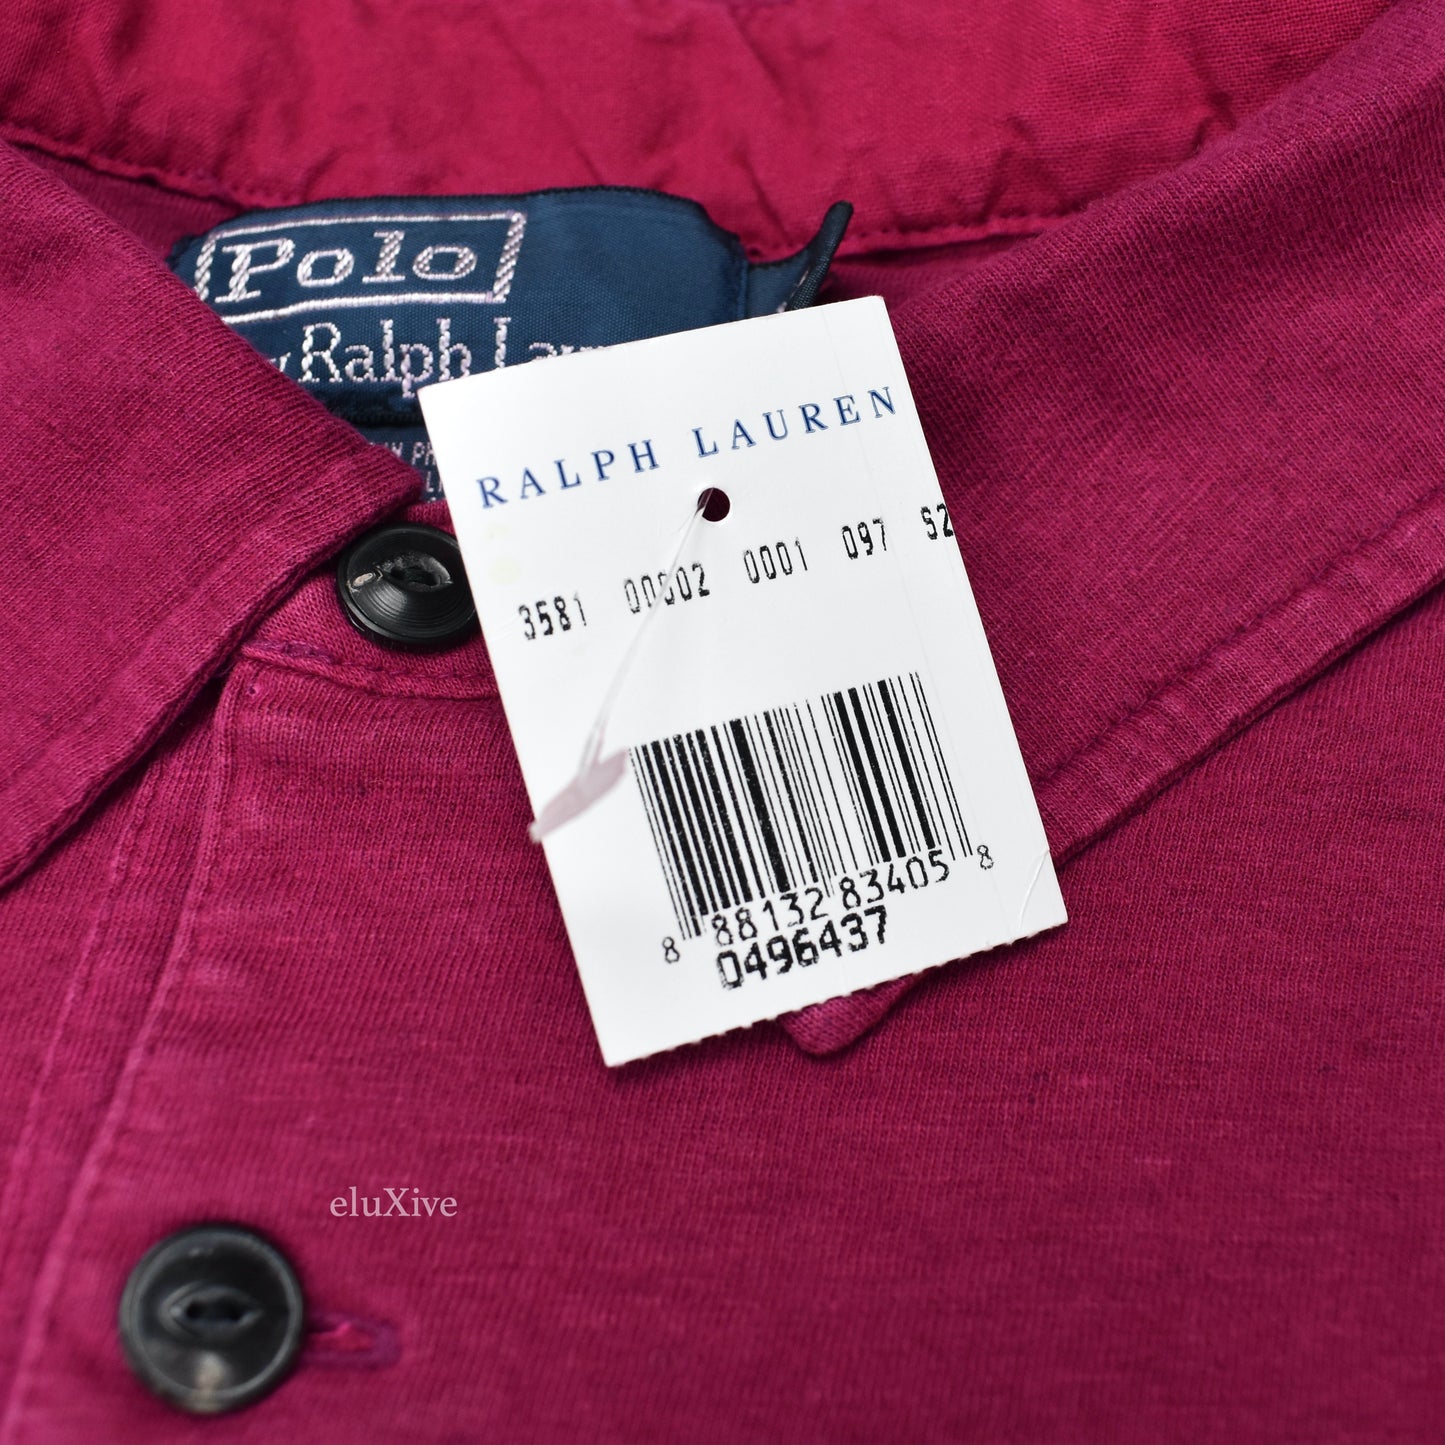 Polo Ralph Lauren - Garment Dyed Pink Shirt